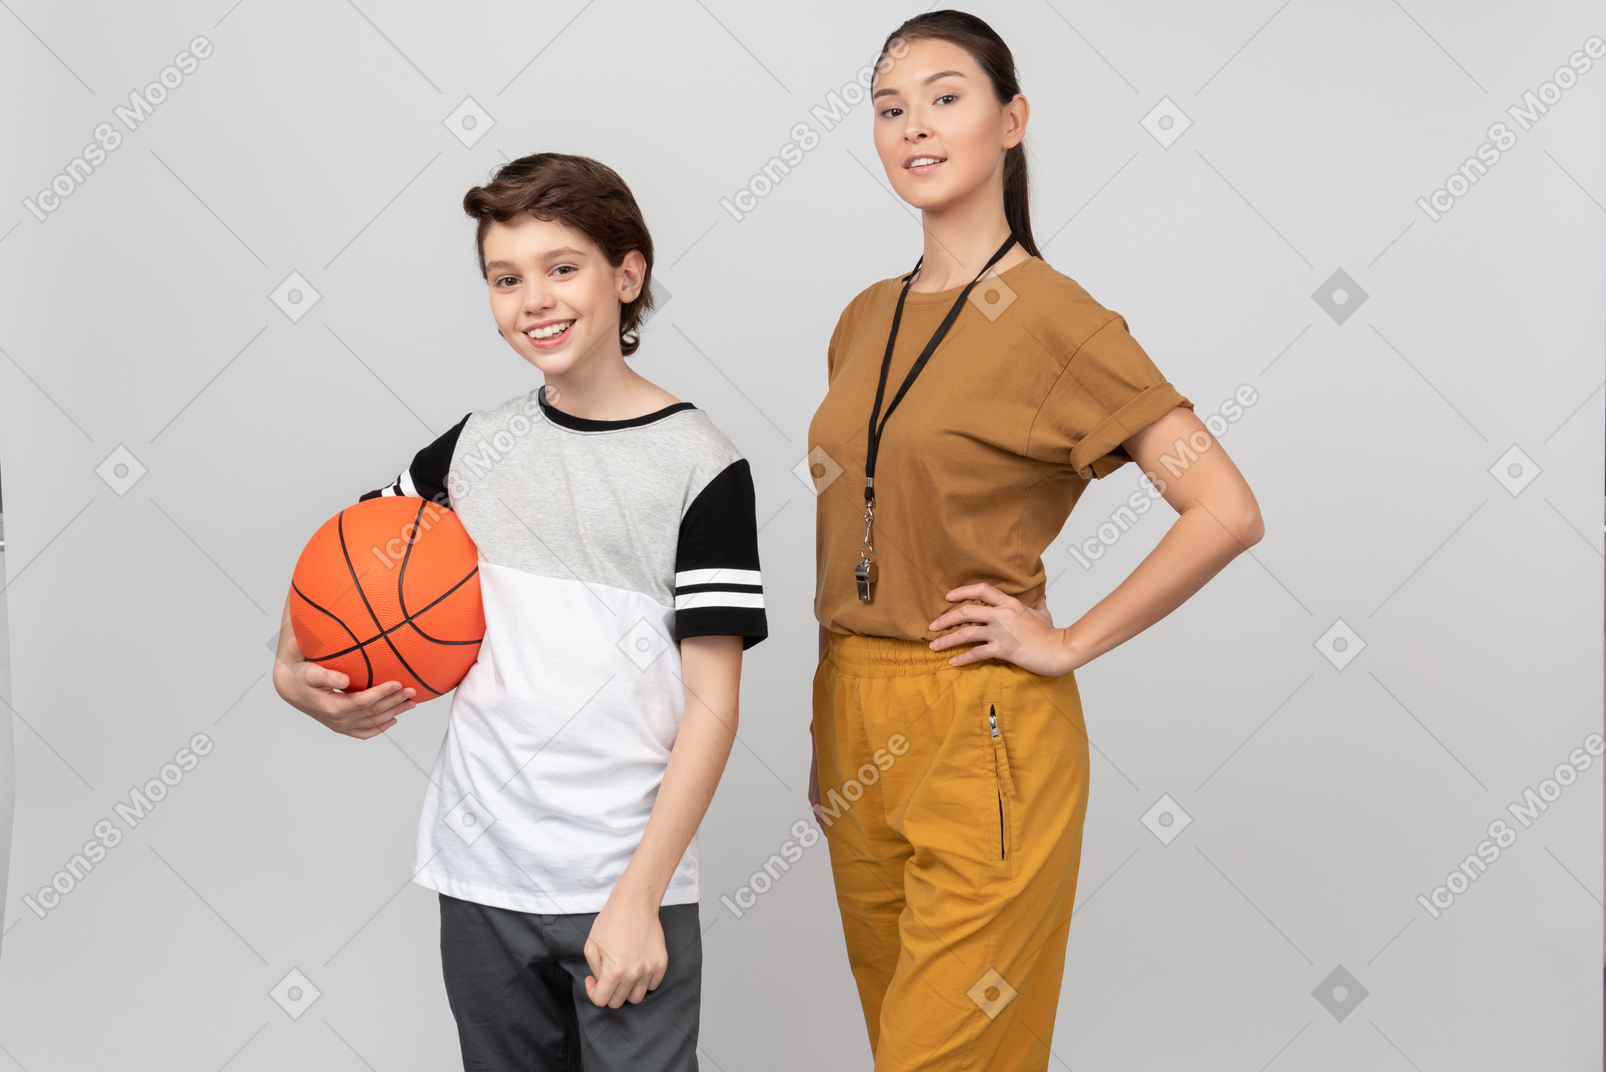 Sportlehrer, der nahe bei schüler steht, der basketballball hält